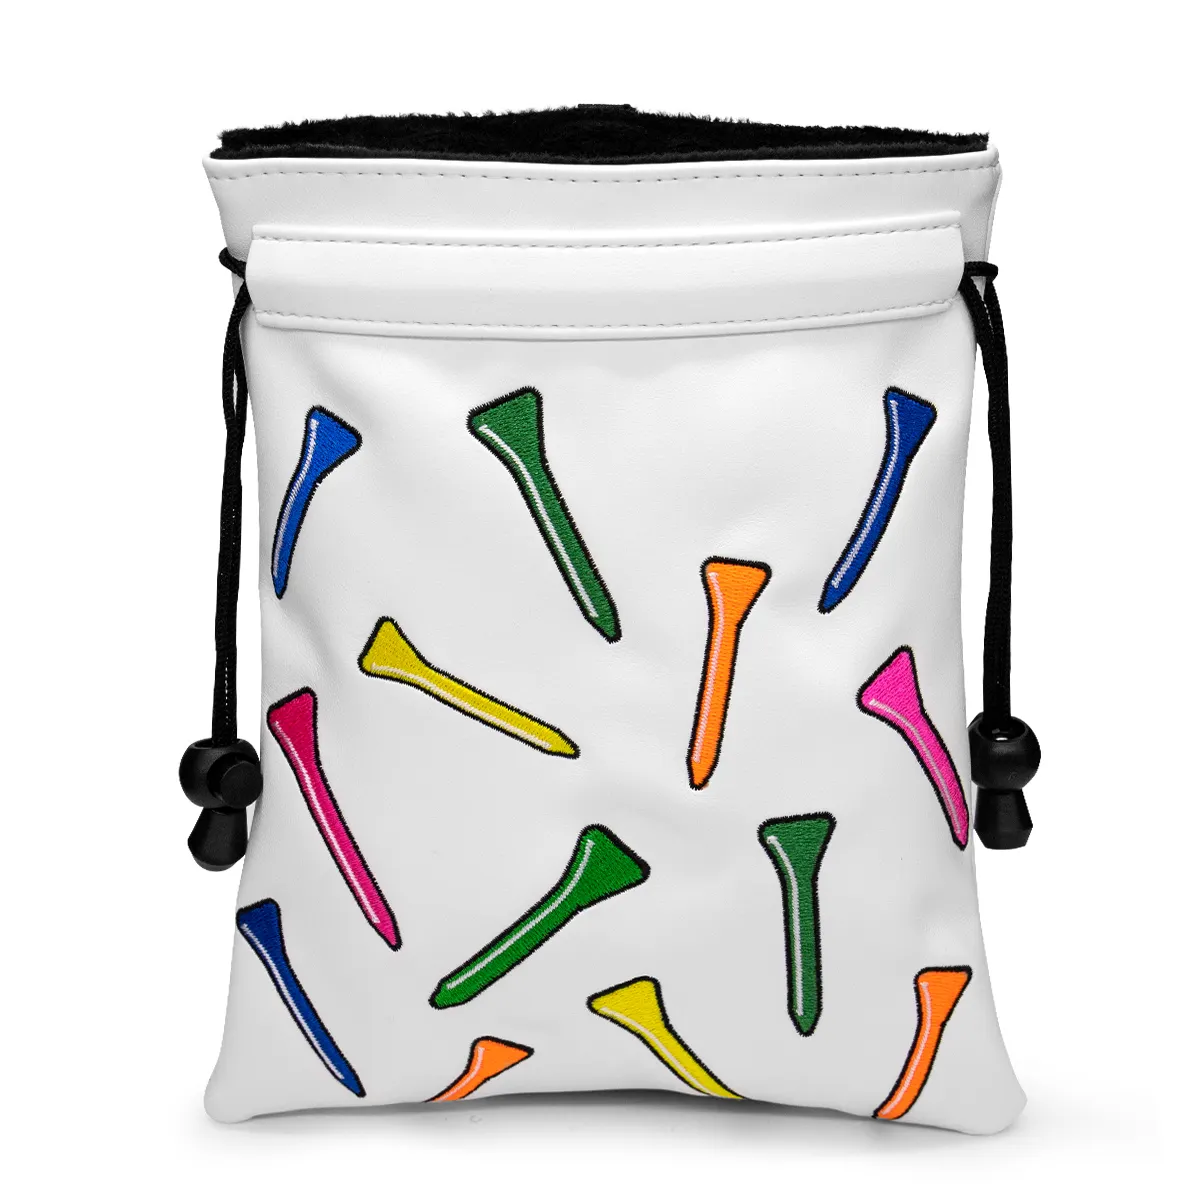 Подставка для гольфа на заказ, легкая сумка для гольфа, подставка для гольфа, оптовая продажа, сумки для гольфа с подставкой